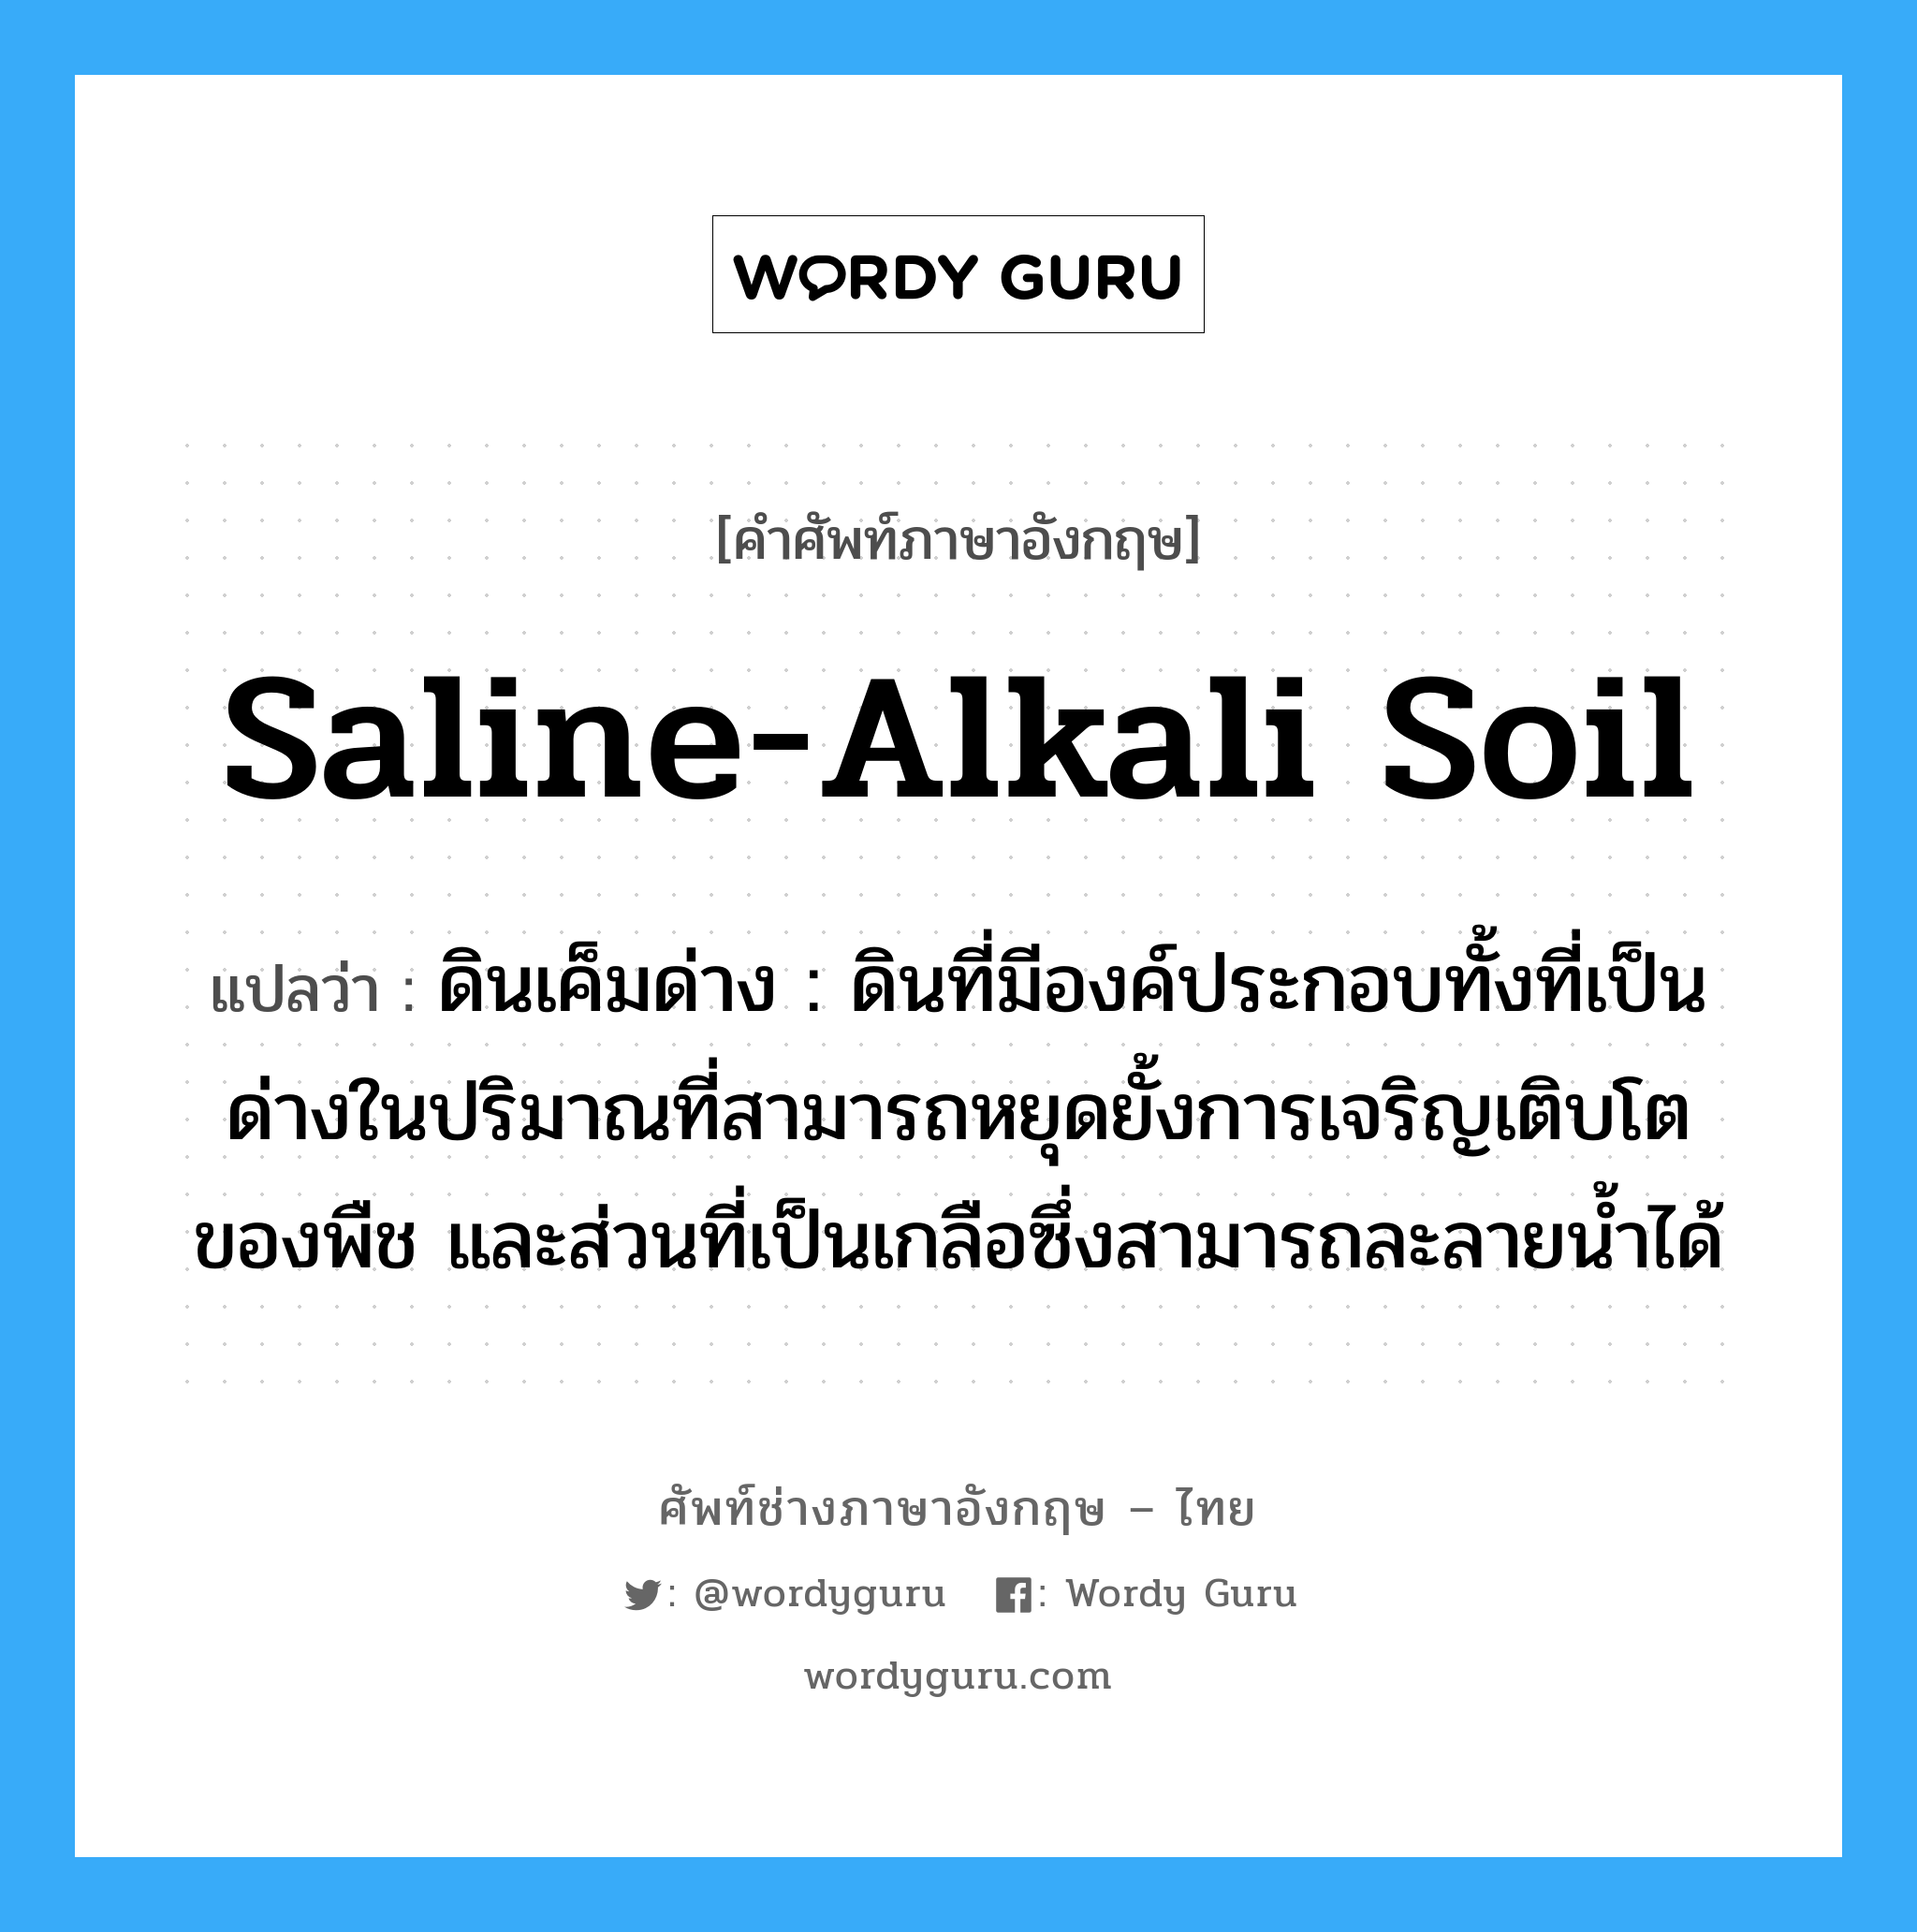 saline-alkali soil แปลว่า?, คำศัพท์ช่างภาษาอังกฤษ - ไทย saline-alkali soil คำศัพท์ภาษาอังกฤษ saline-alkali soil แปลว่า ดินเค็มด่าง : ดินที่มีองค์ประกอบทั้งที่เป็นด่างในปริมาณที่สามารถหยุดยั้งการเจริญเติบโตของพืช และส่วนที่เป็นเกลือซึ่งสามารถละลายน้ำได้